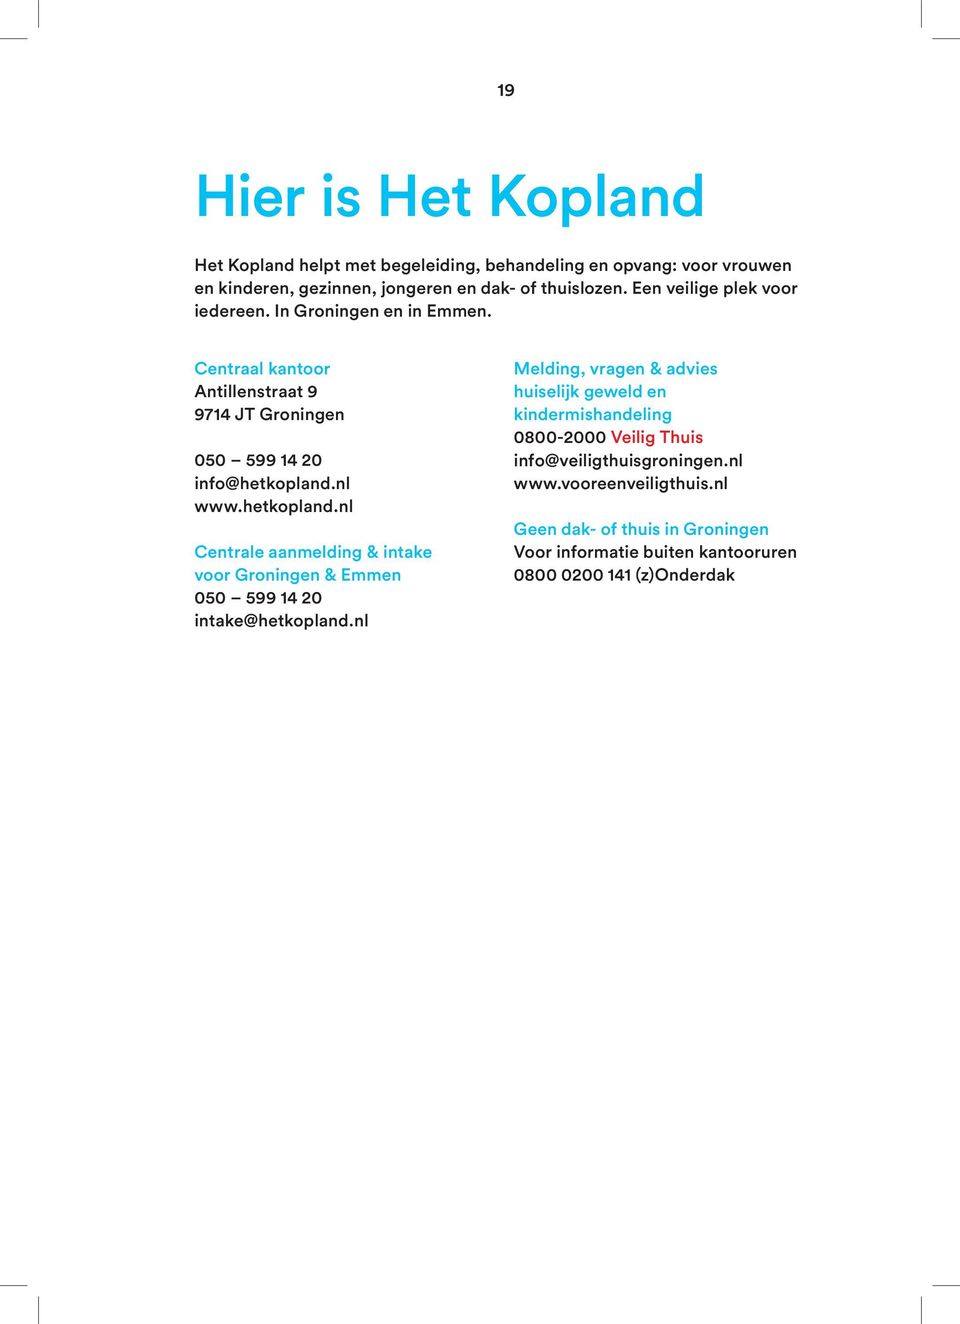 nl www.hetkopland.nl Centrale aanmelding & intake voor Groningen & Emmen 050 599 14 20 intake@hetkopland.